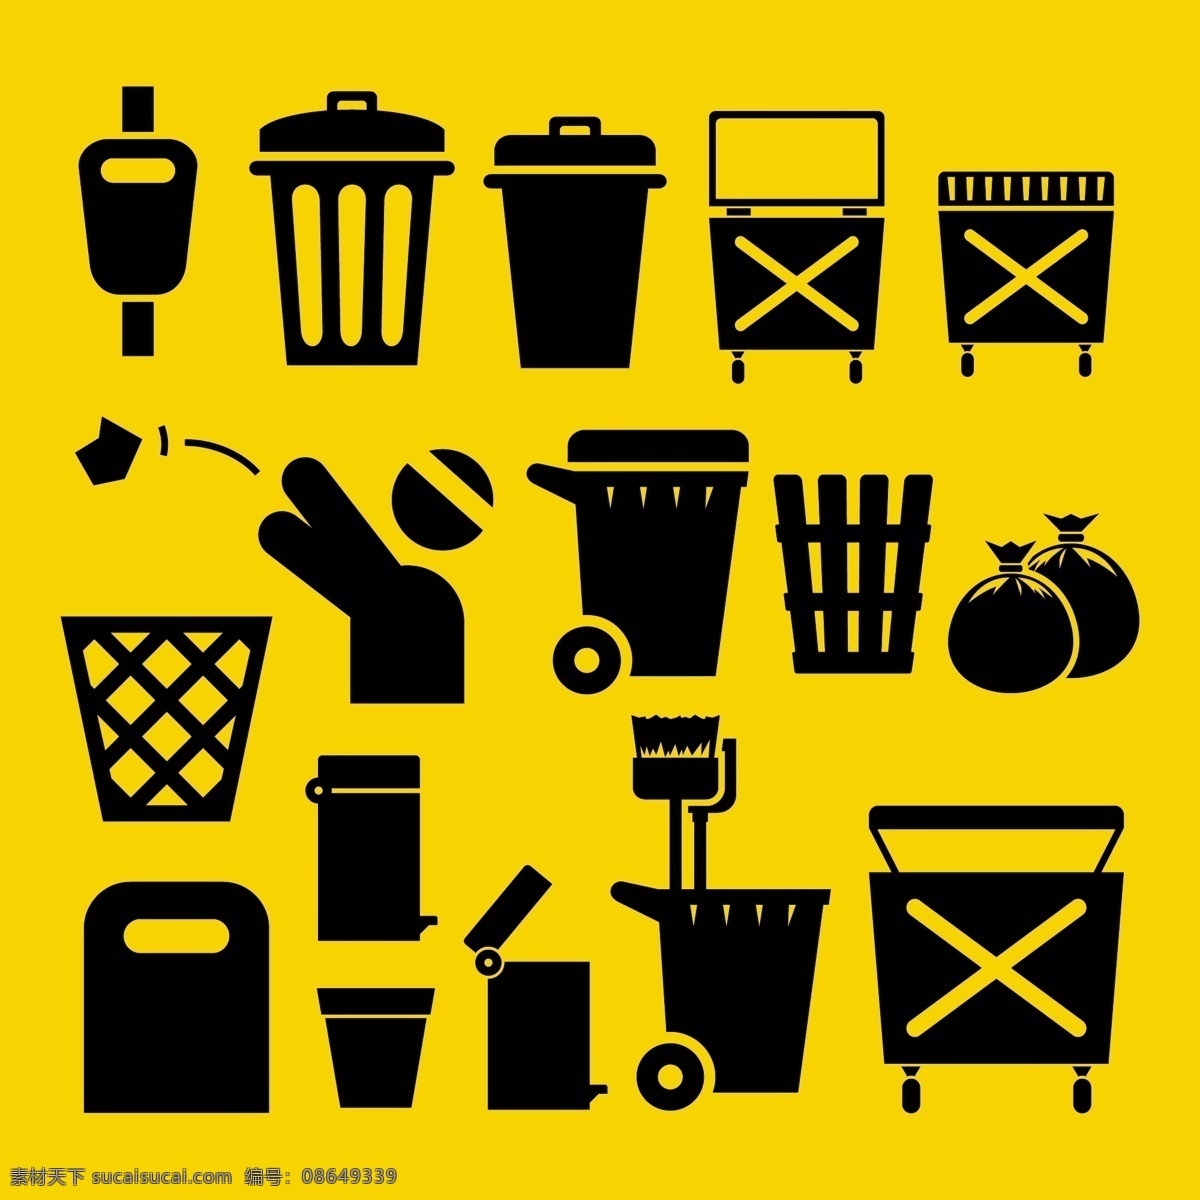 各种 垃圾桶 图标 垃圾桶图标 垃圾图标 卡通垃圾桶 矢量垃圾桶 生活百科 矢量素材 黄色